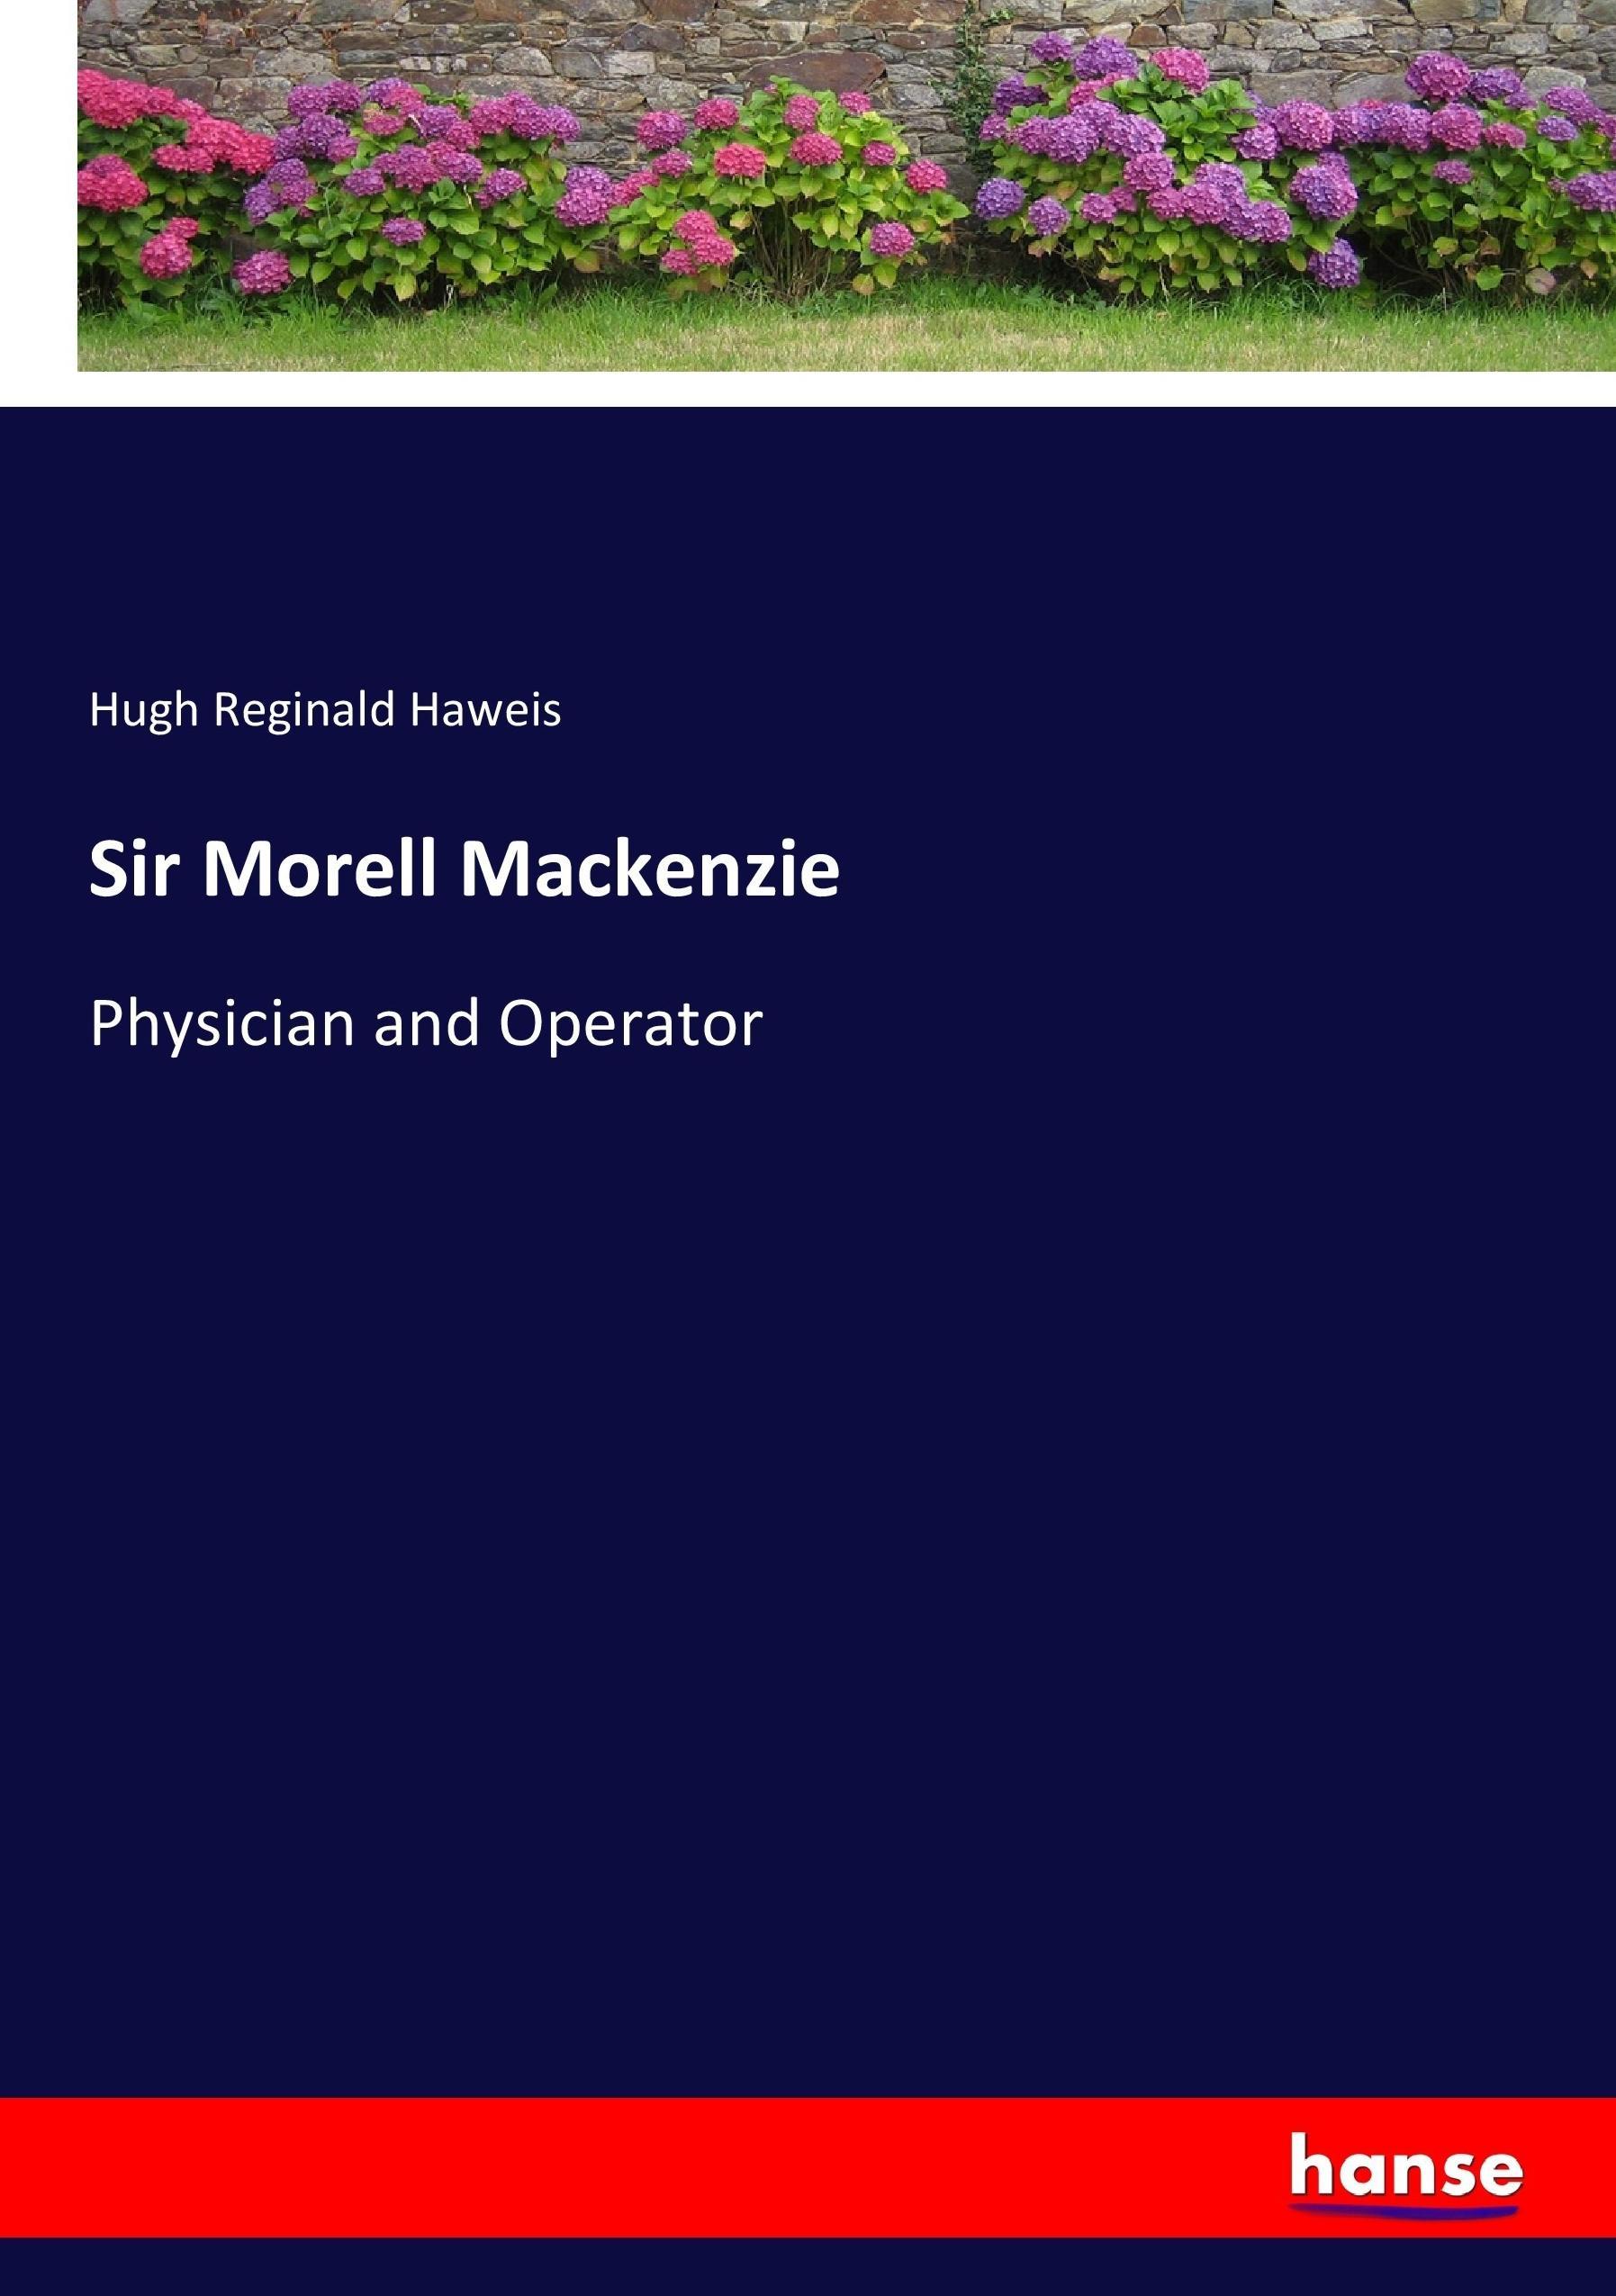 Sir Morell Mackenzie - Haweis, Hugh Reginald